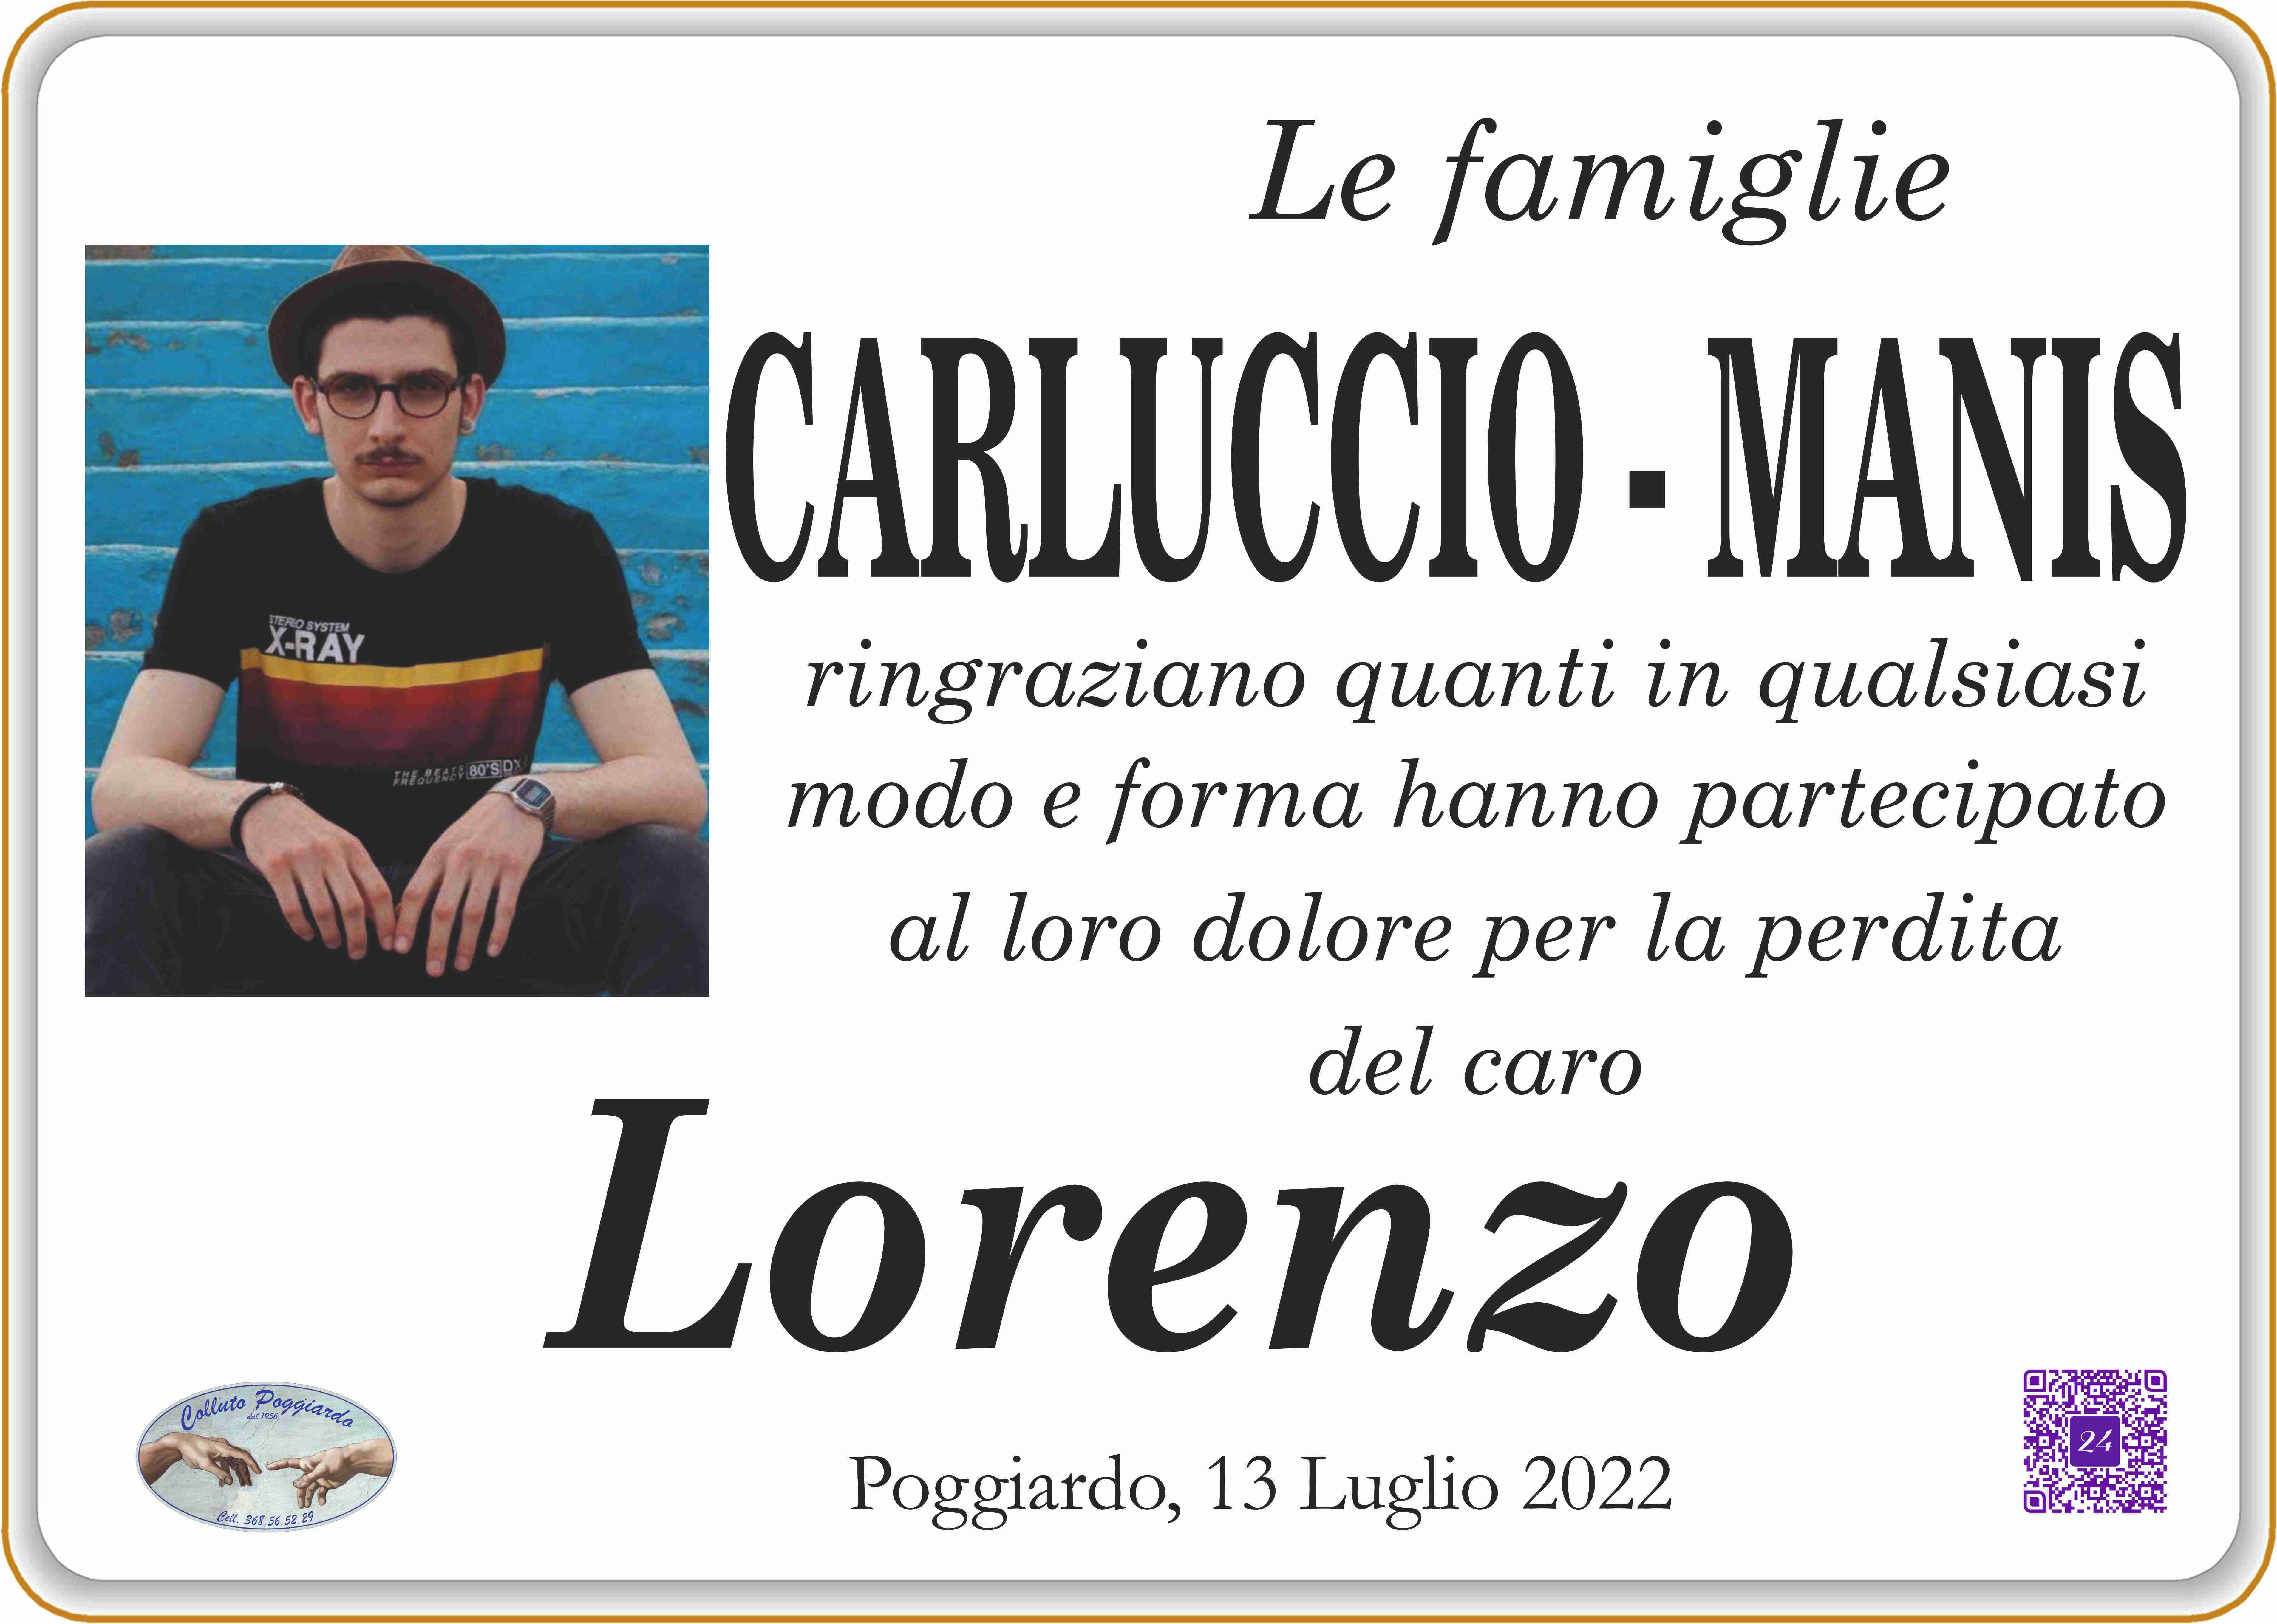 Lorenzo Carluccio